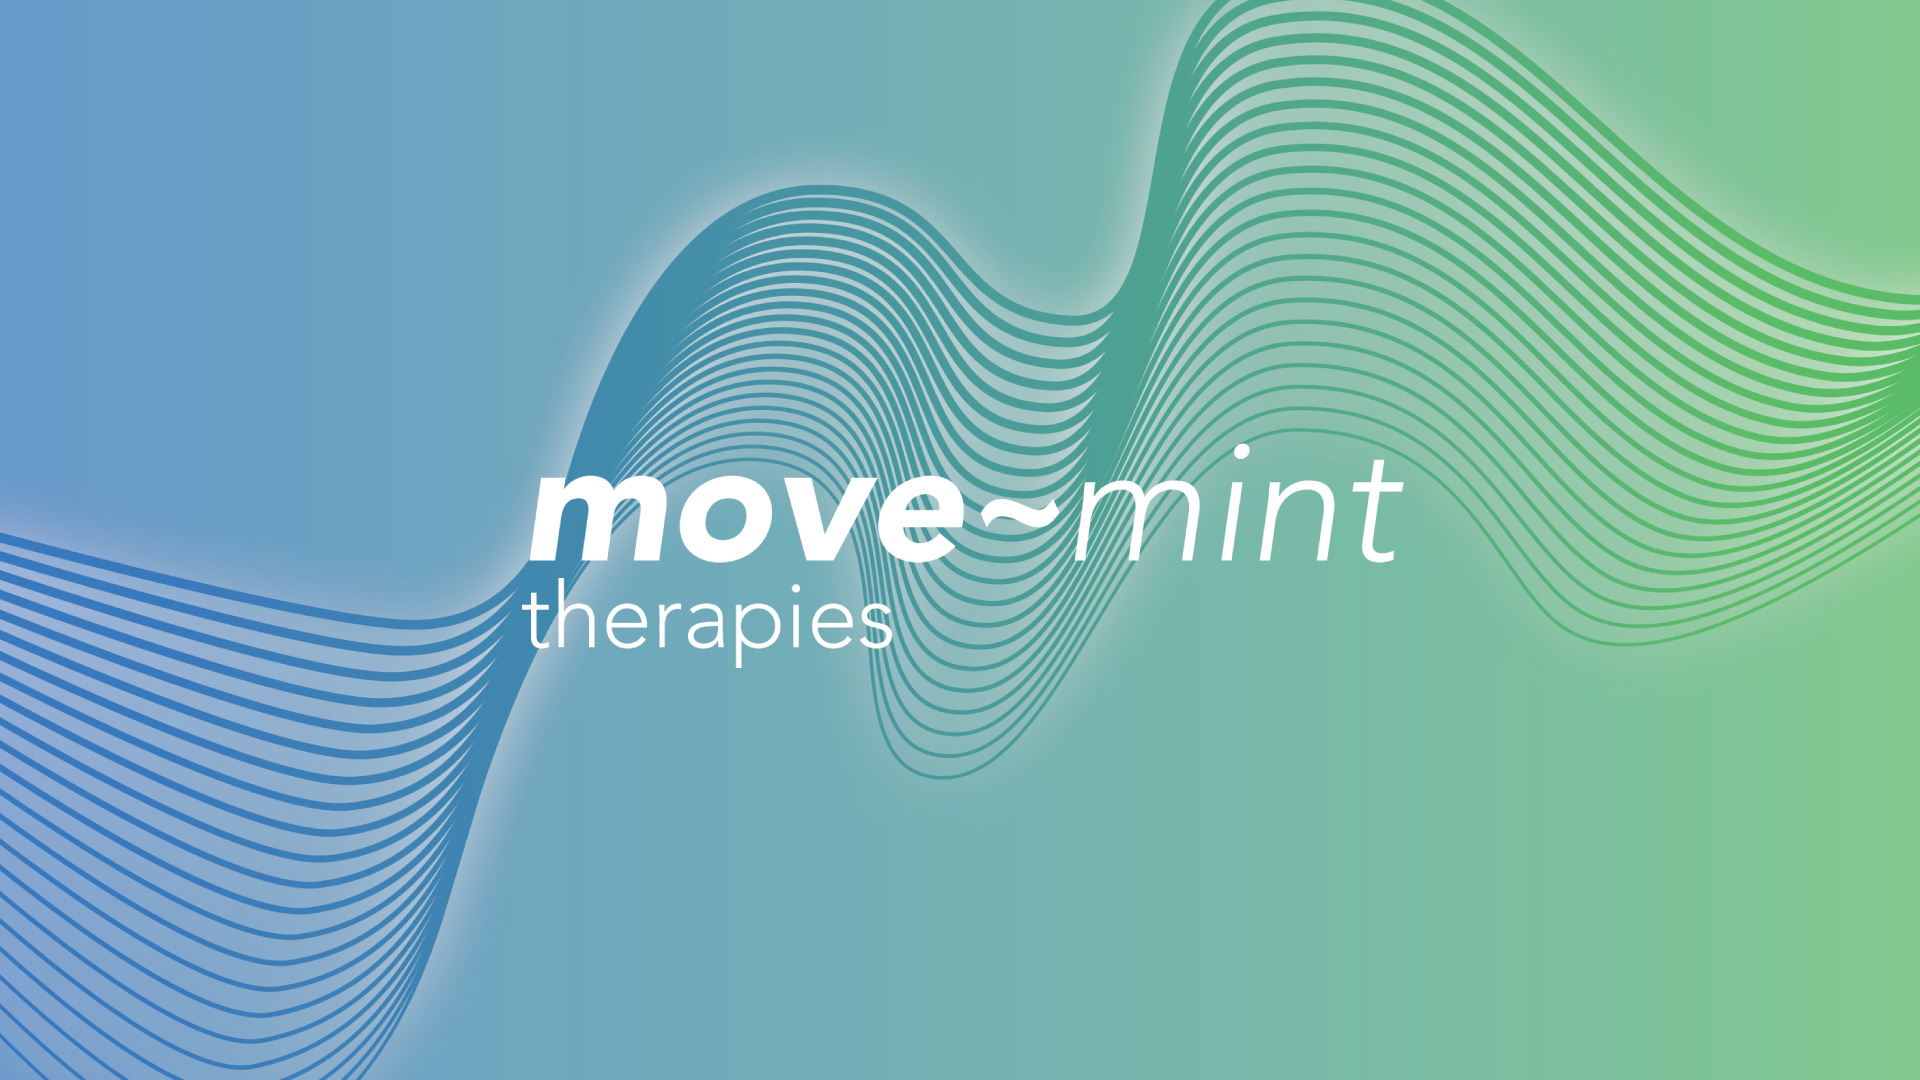 Move-mint